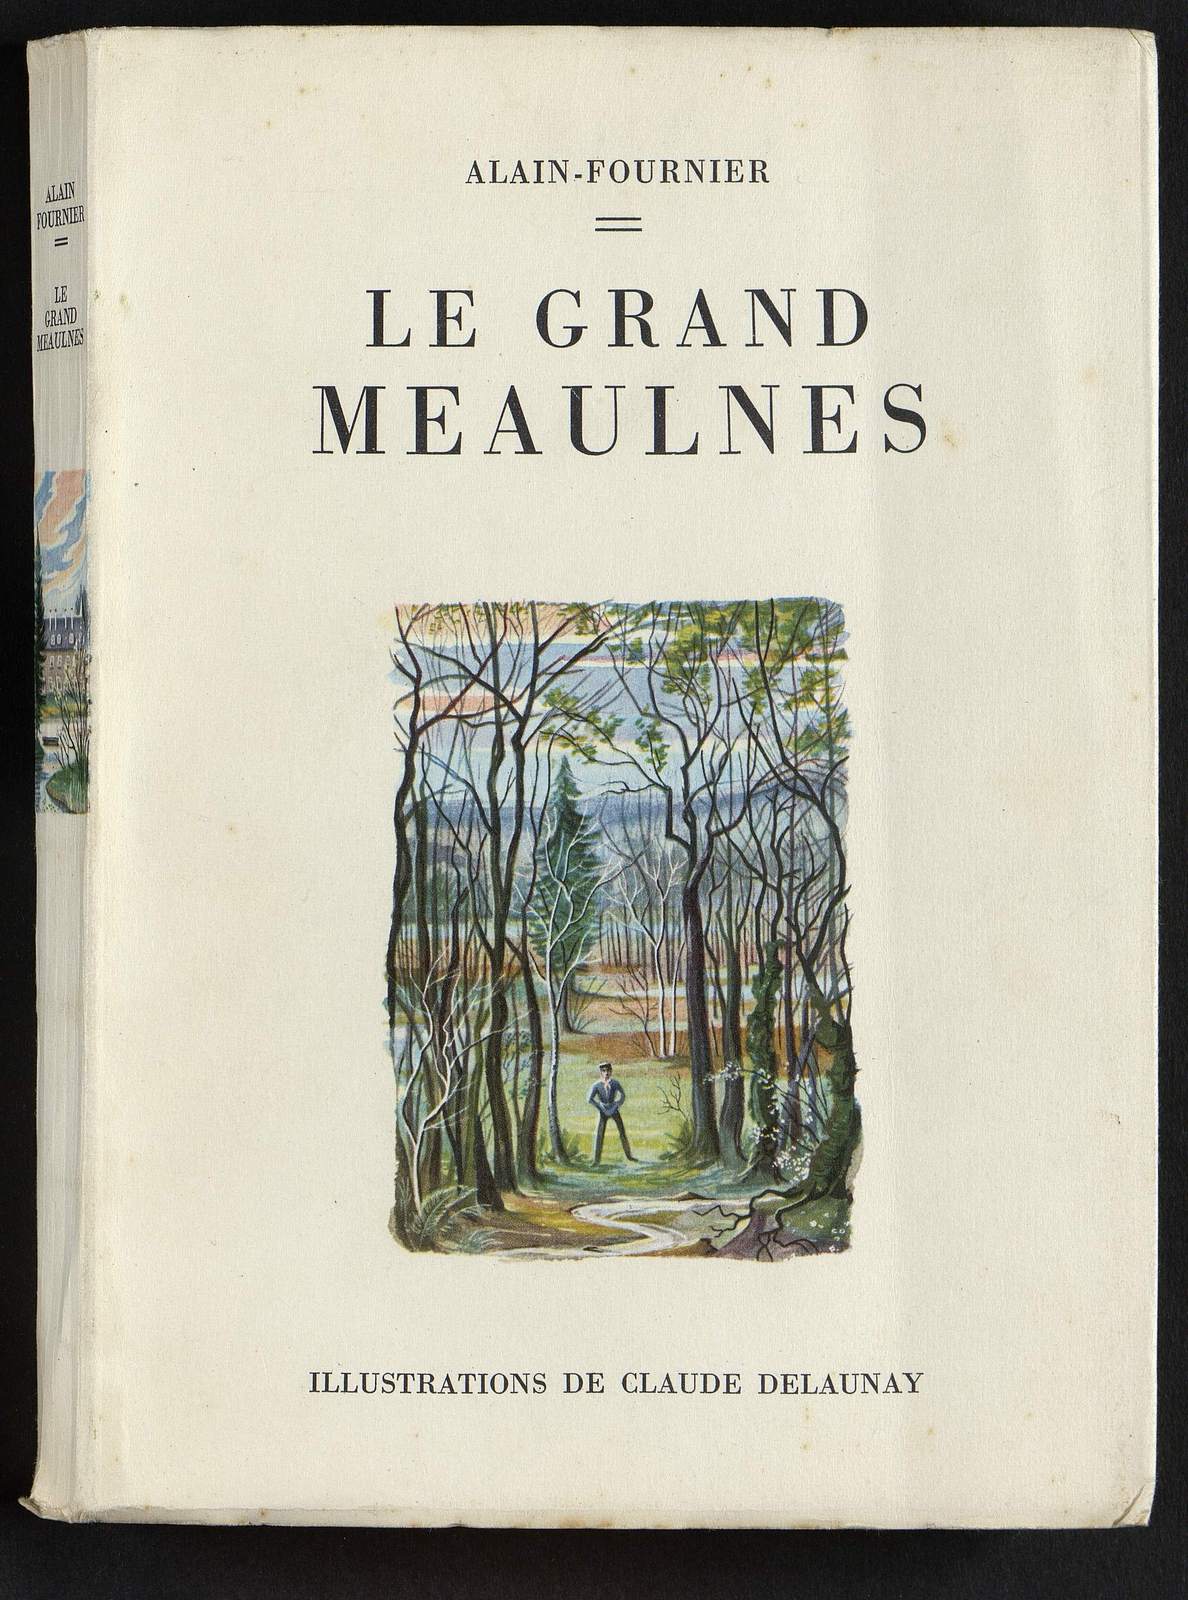 Le Grand Meaulnes, On frappe au carreau, illustré par Claude Delaunay, Editions GP, 1952